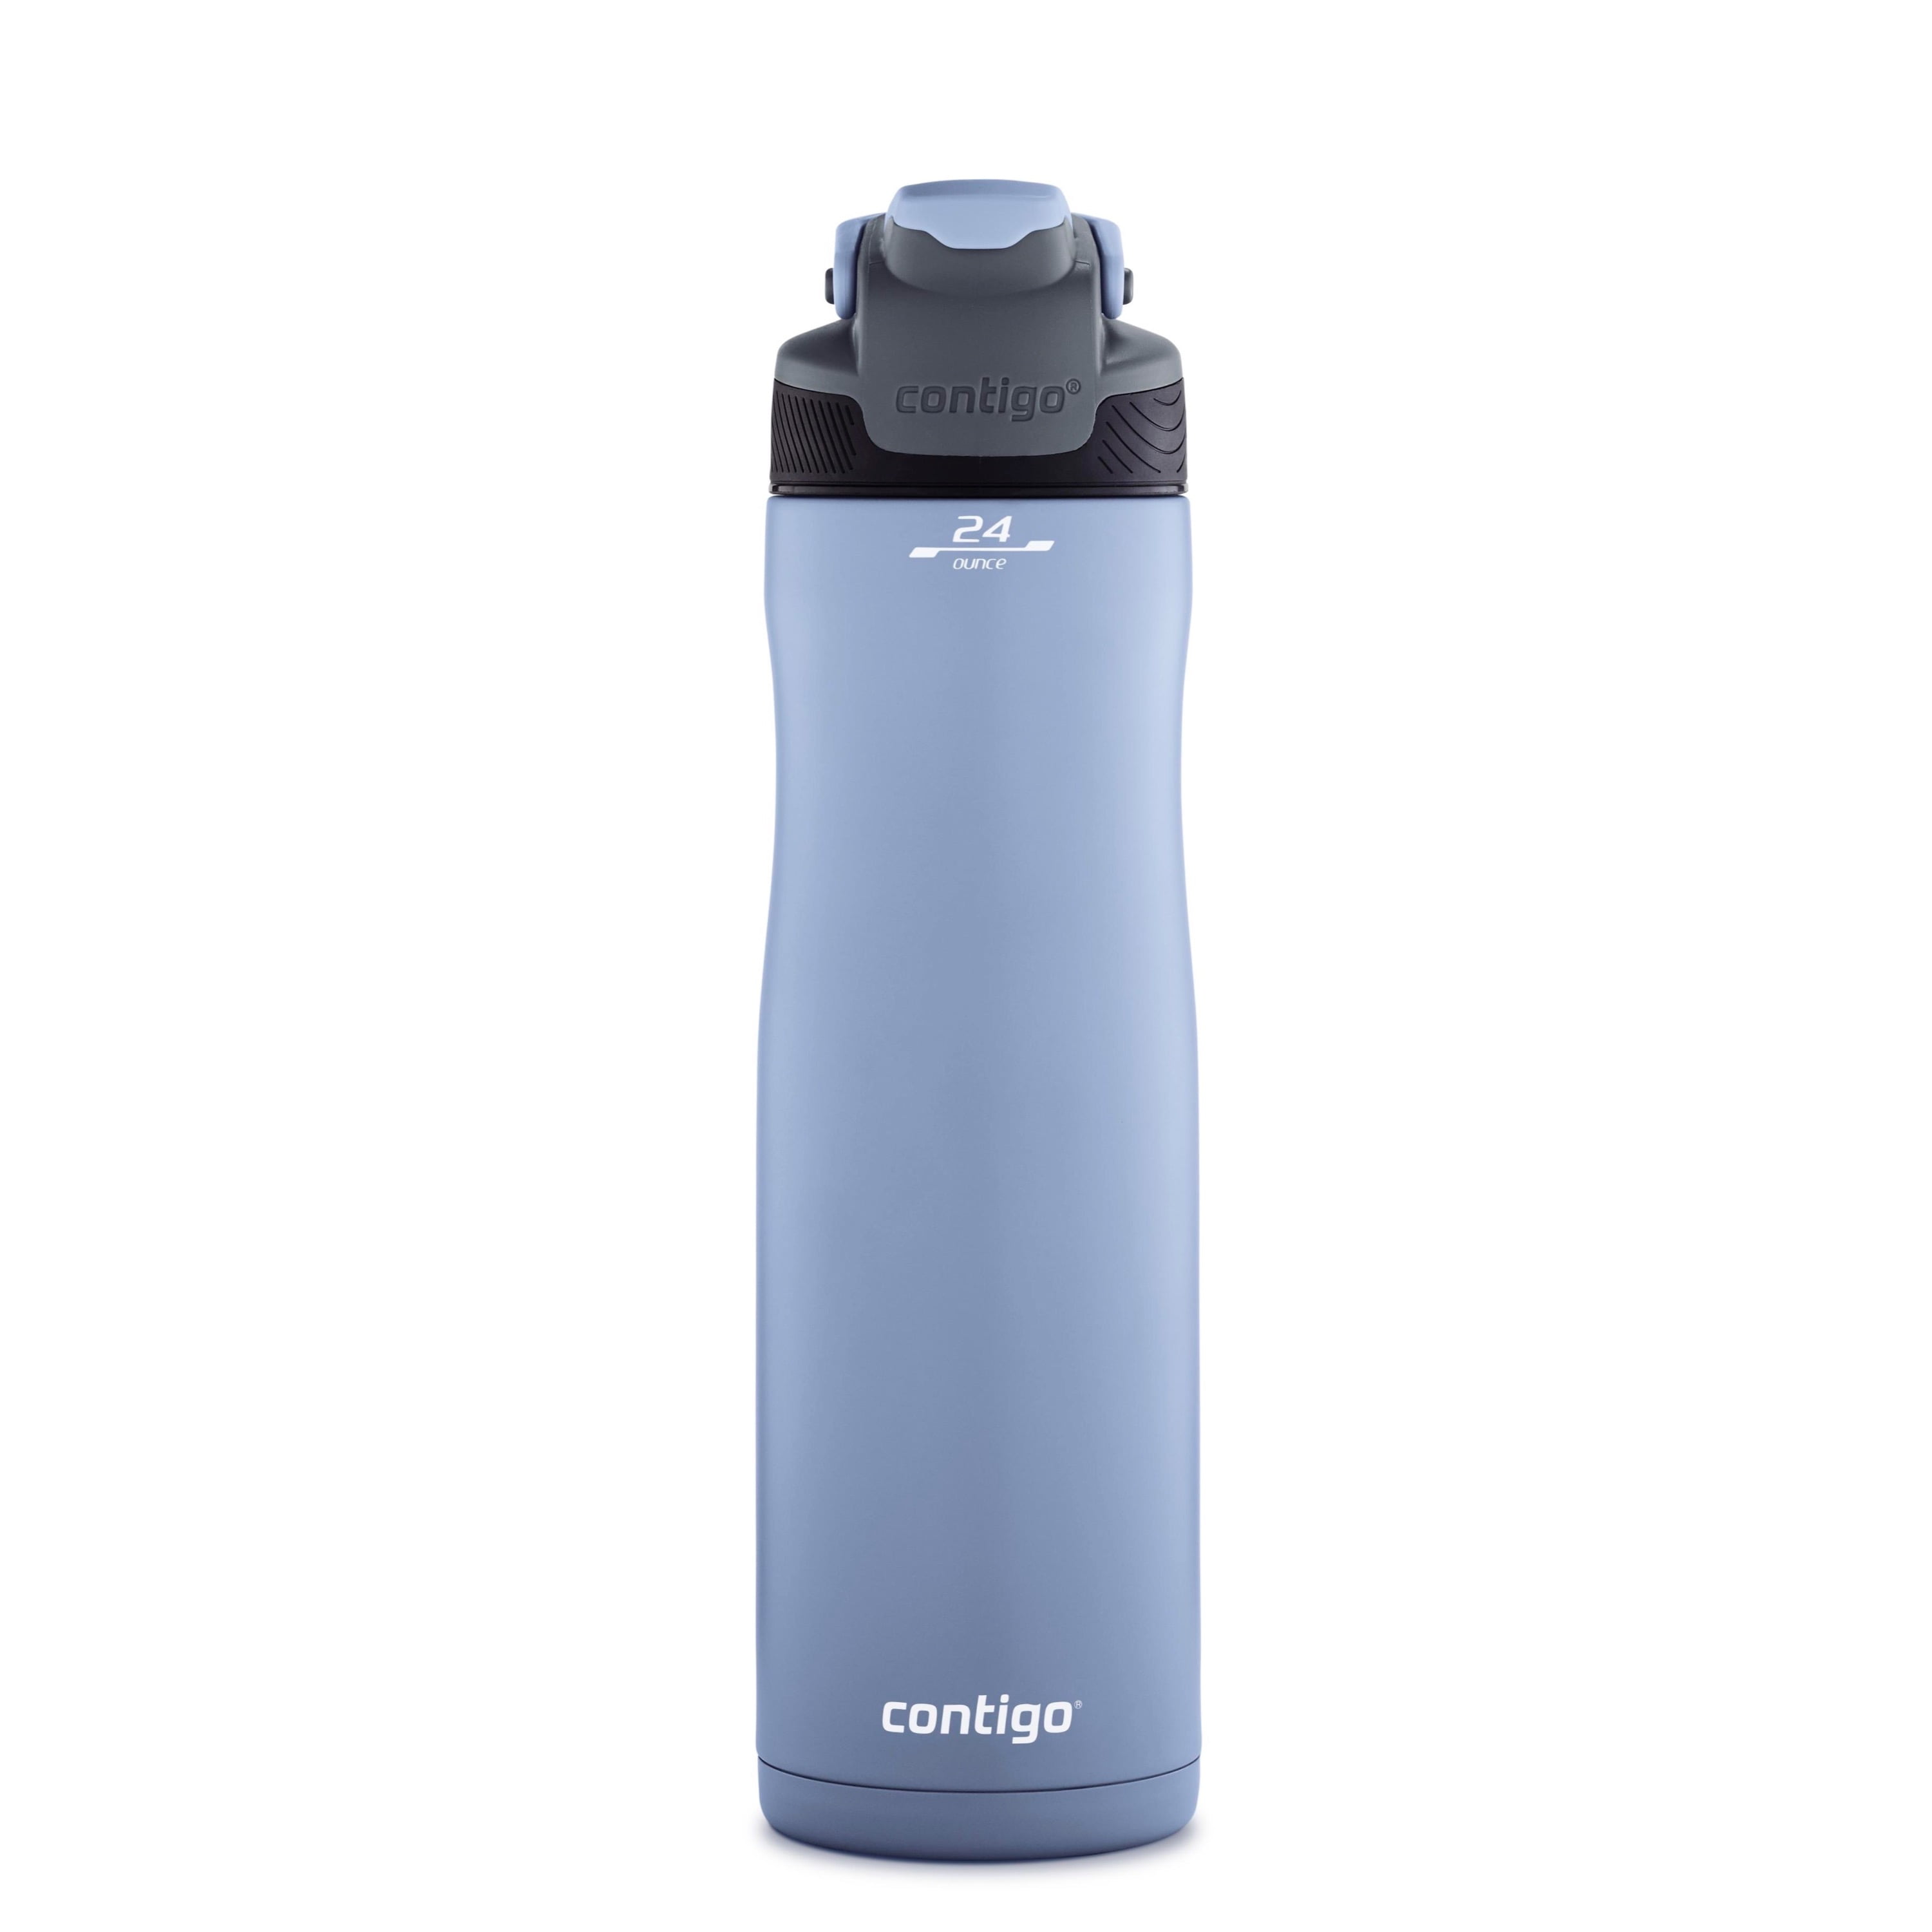 Contigo 24 oz Autoseal Chill Stainless Steel Water Bottle, Dark